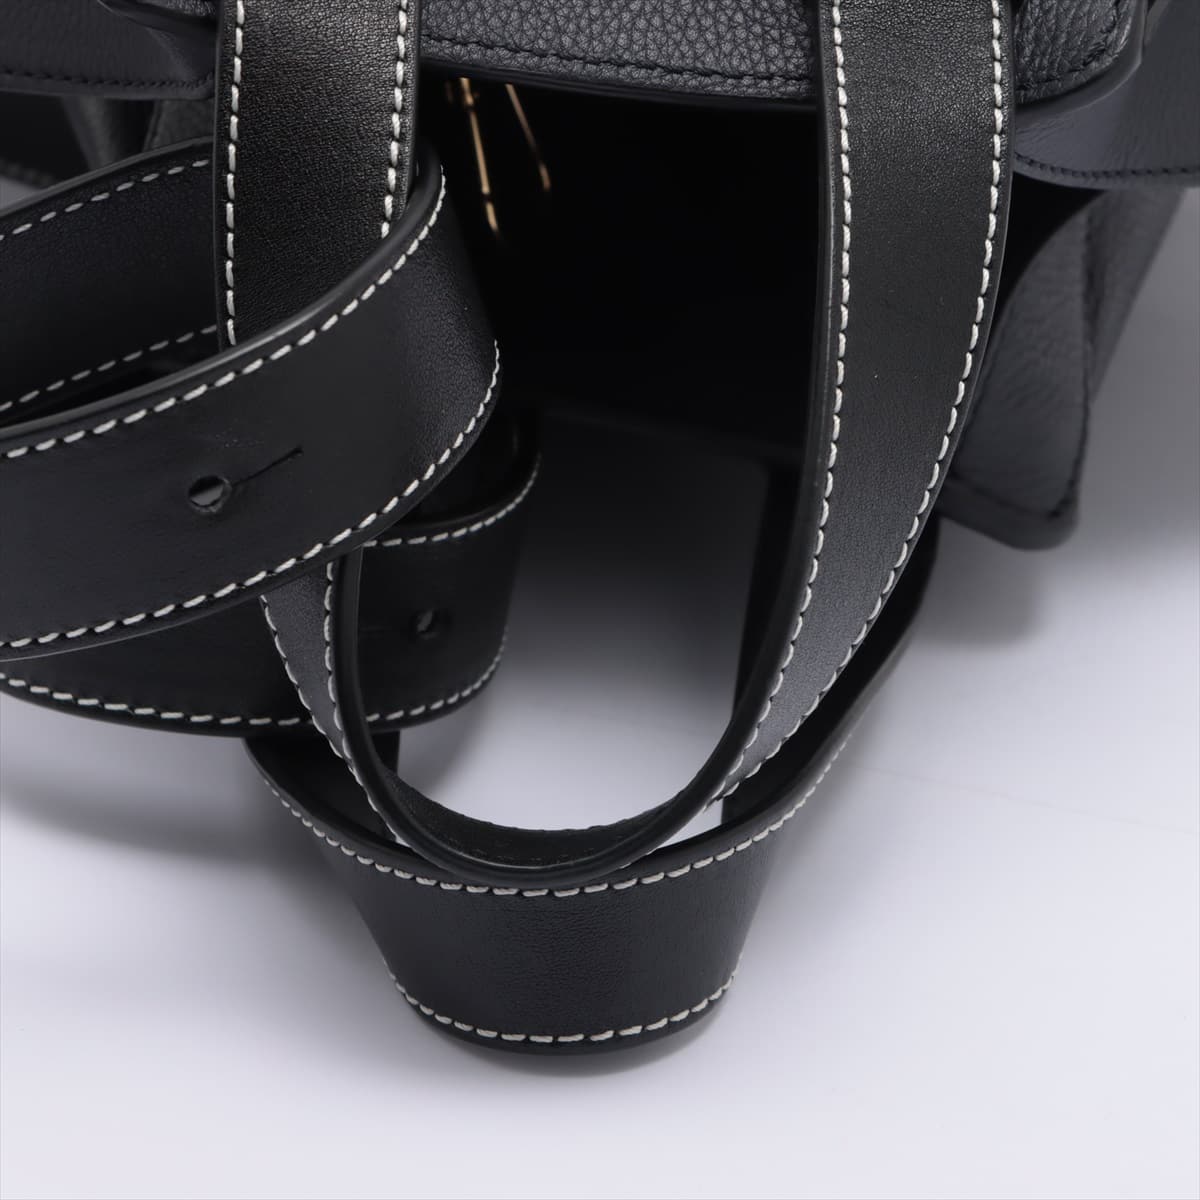 Loewe Hammock Medium Leather 2way handbag Black x Navy